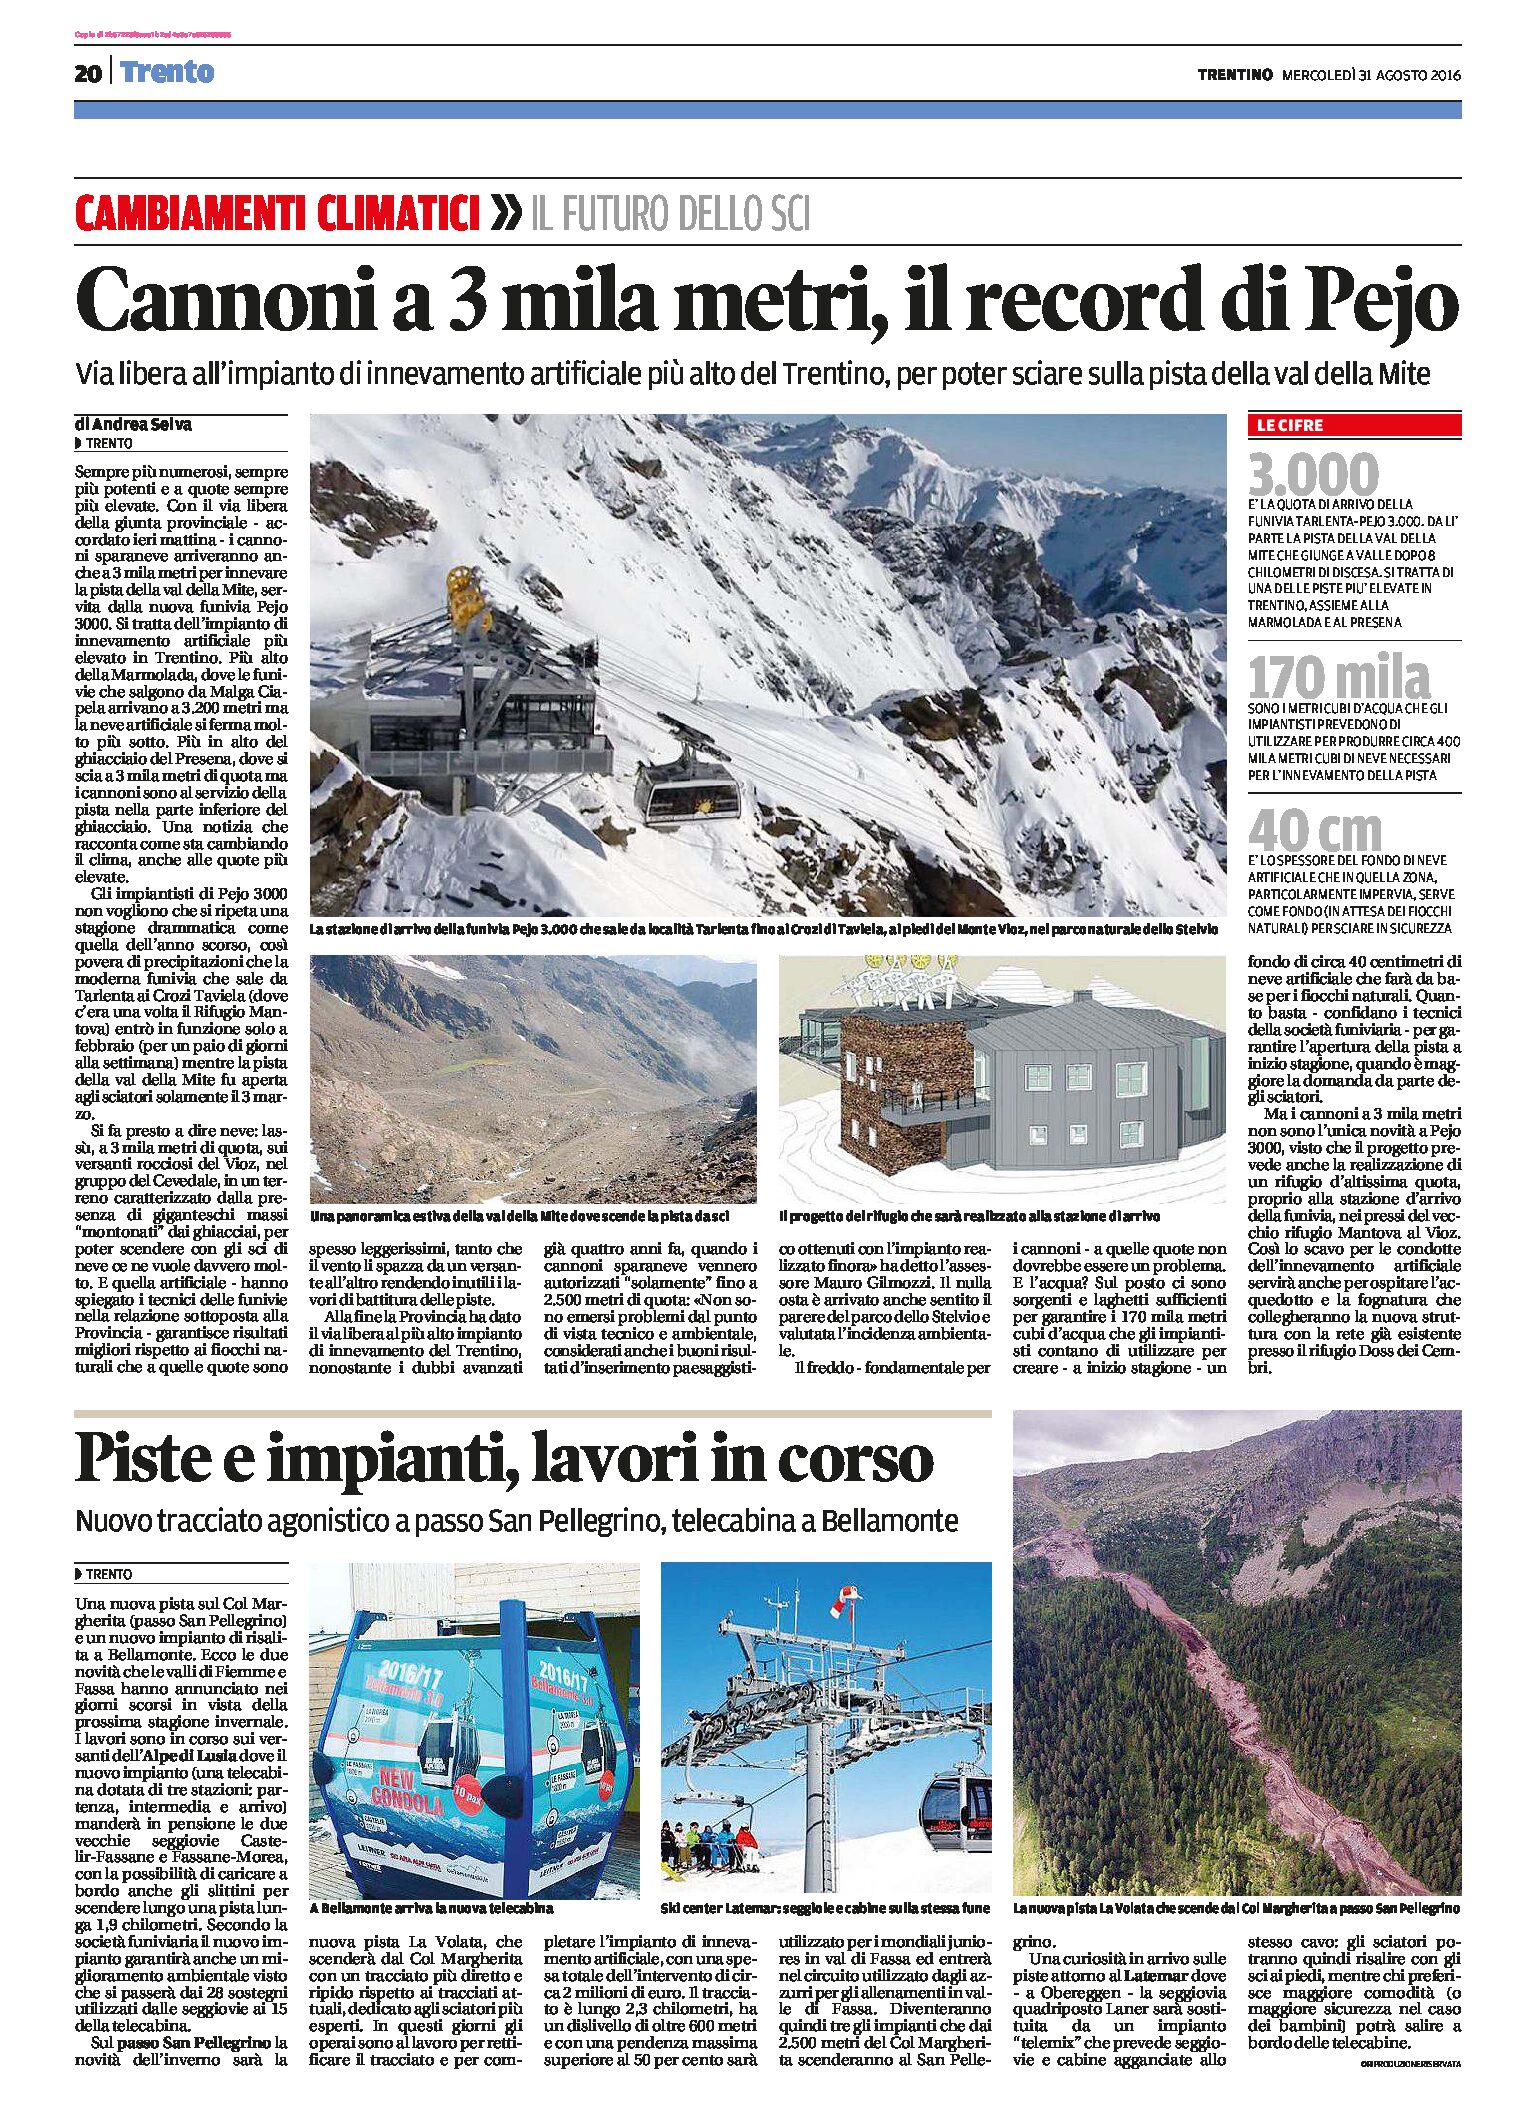 Piste e impianti: in Val della Mite cannoni a 3000 metri, a San Pellegrino nuovo tracciato